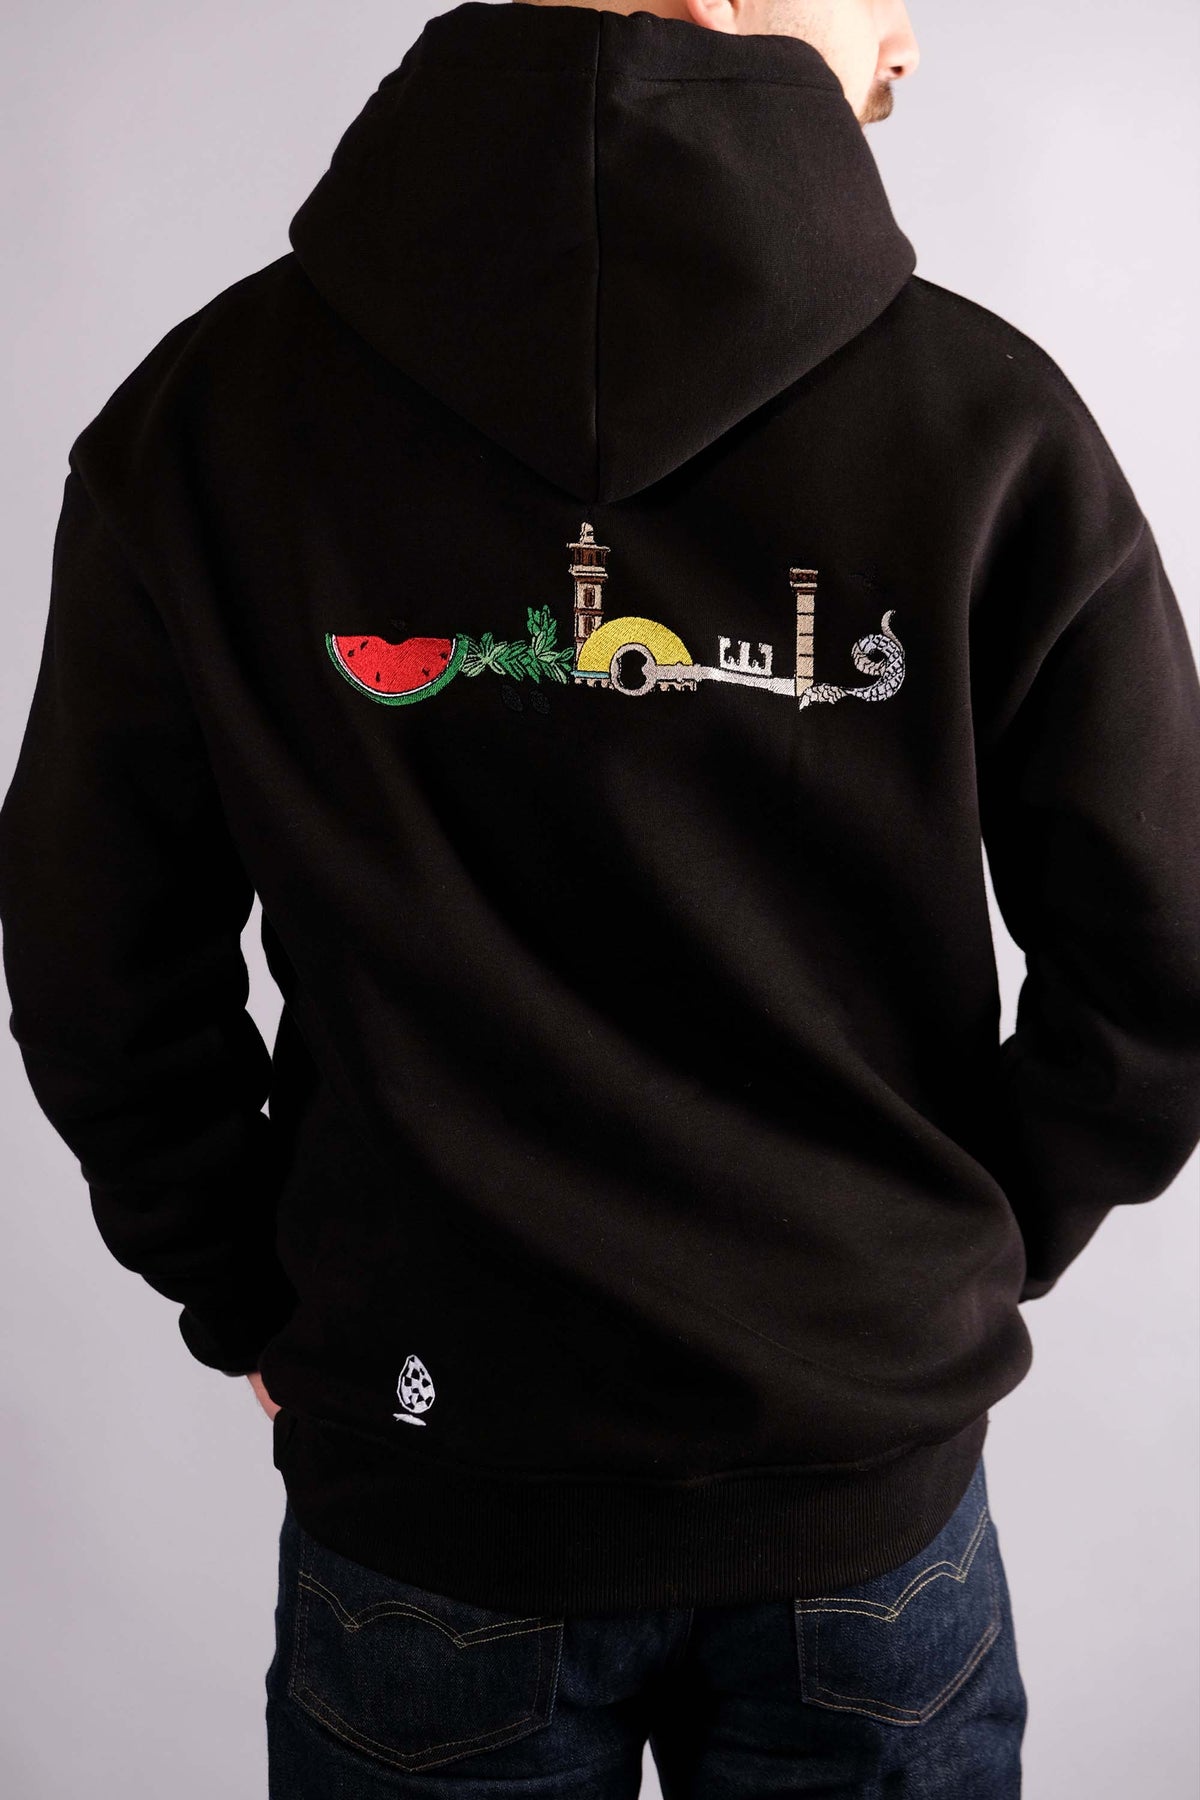 "Palestine" hoodie